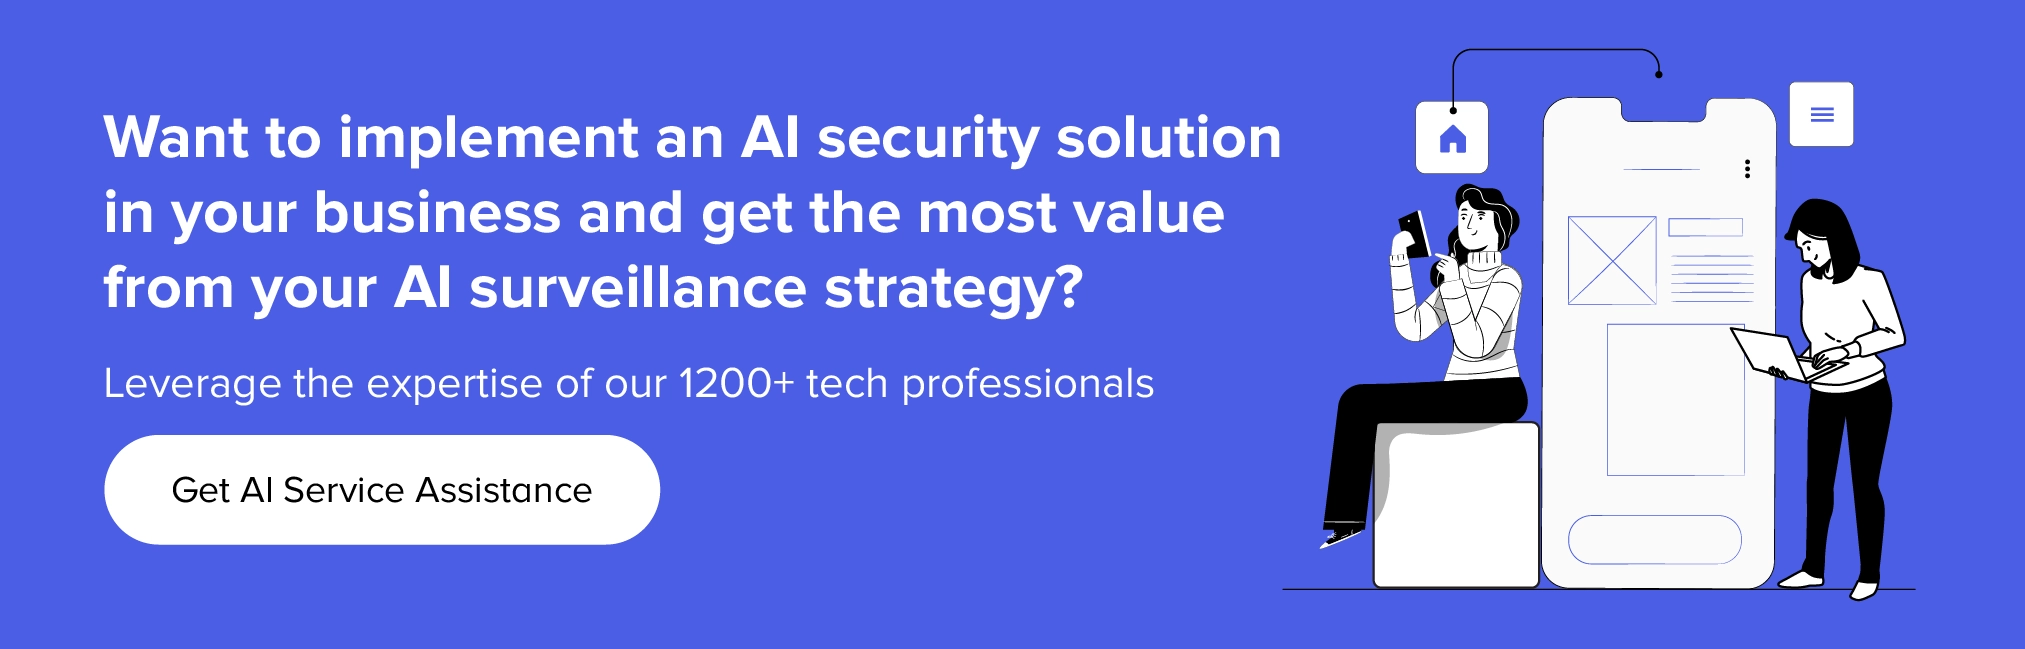 Contattaci per implementare soluzioni di sicurezza AI nella tua azienda